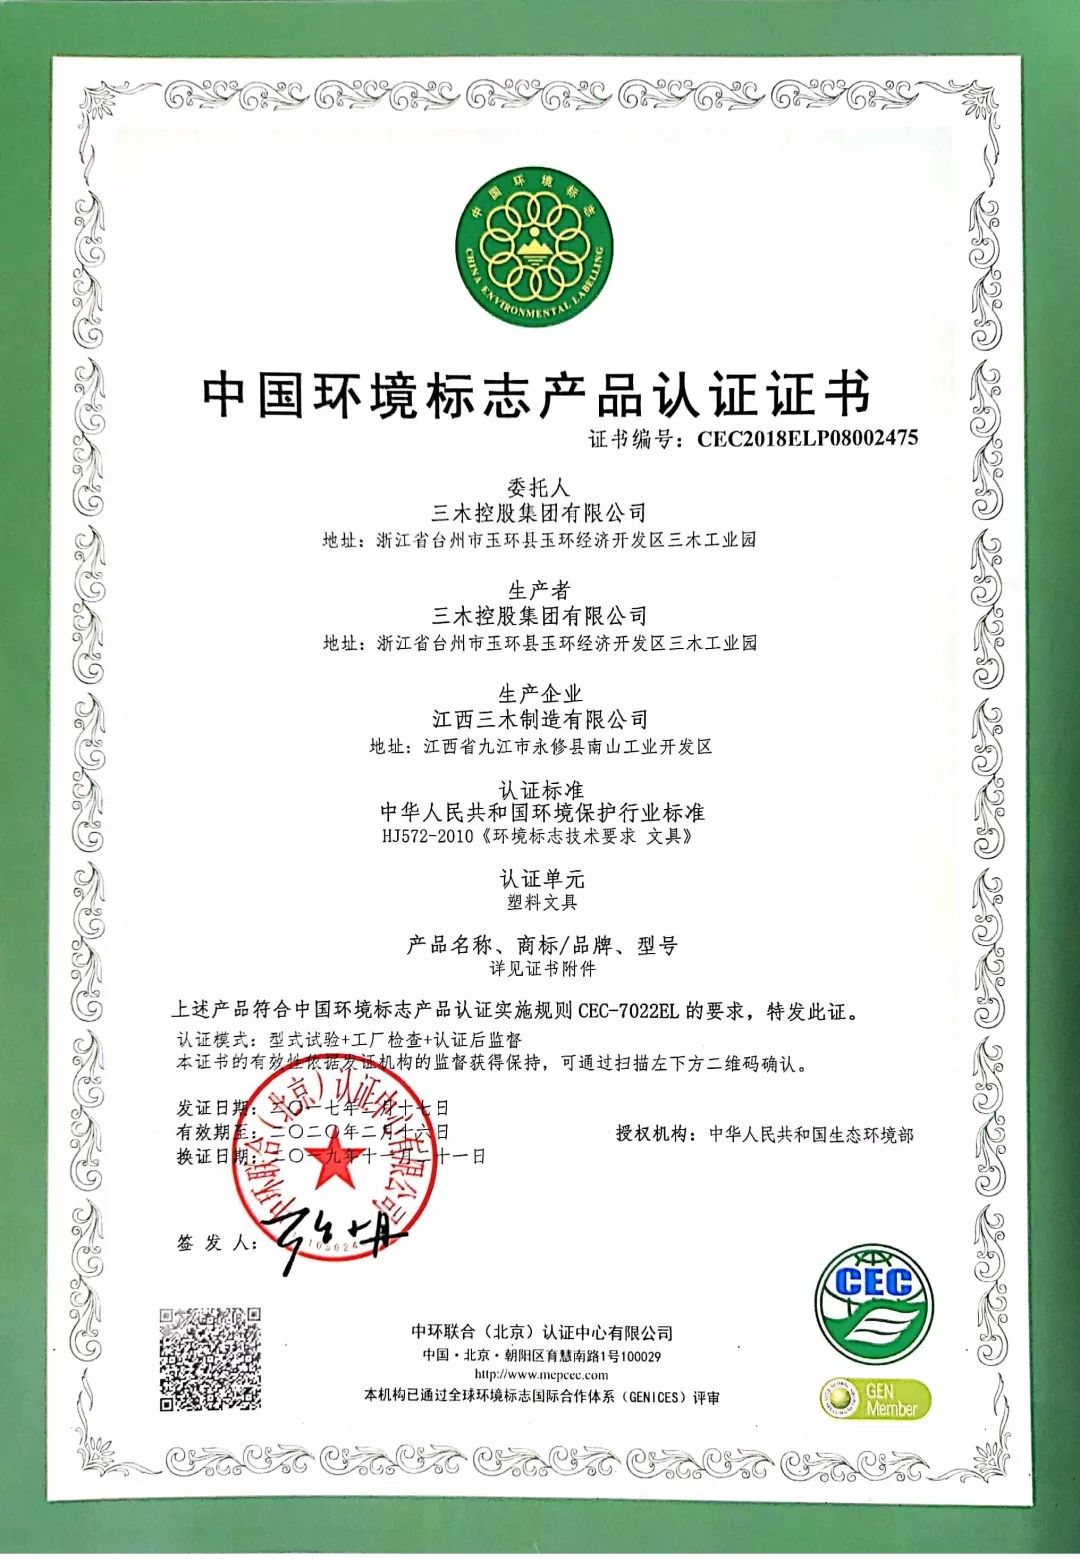 健康,环保,放心的良心产品三木顺利通过中国环境标志产品认证象征着